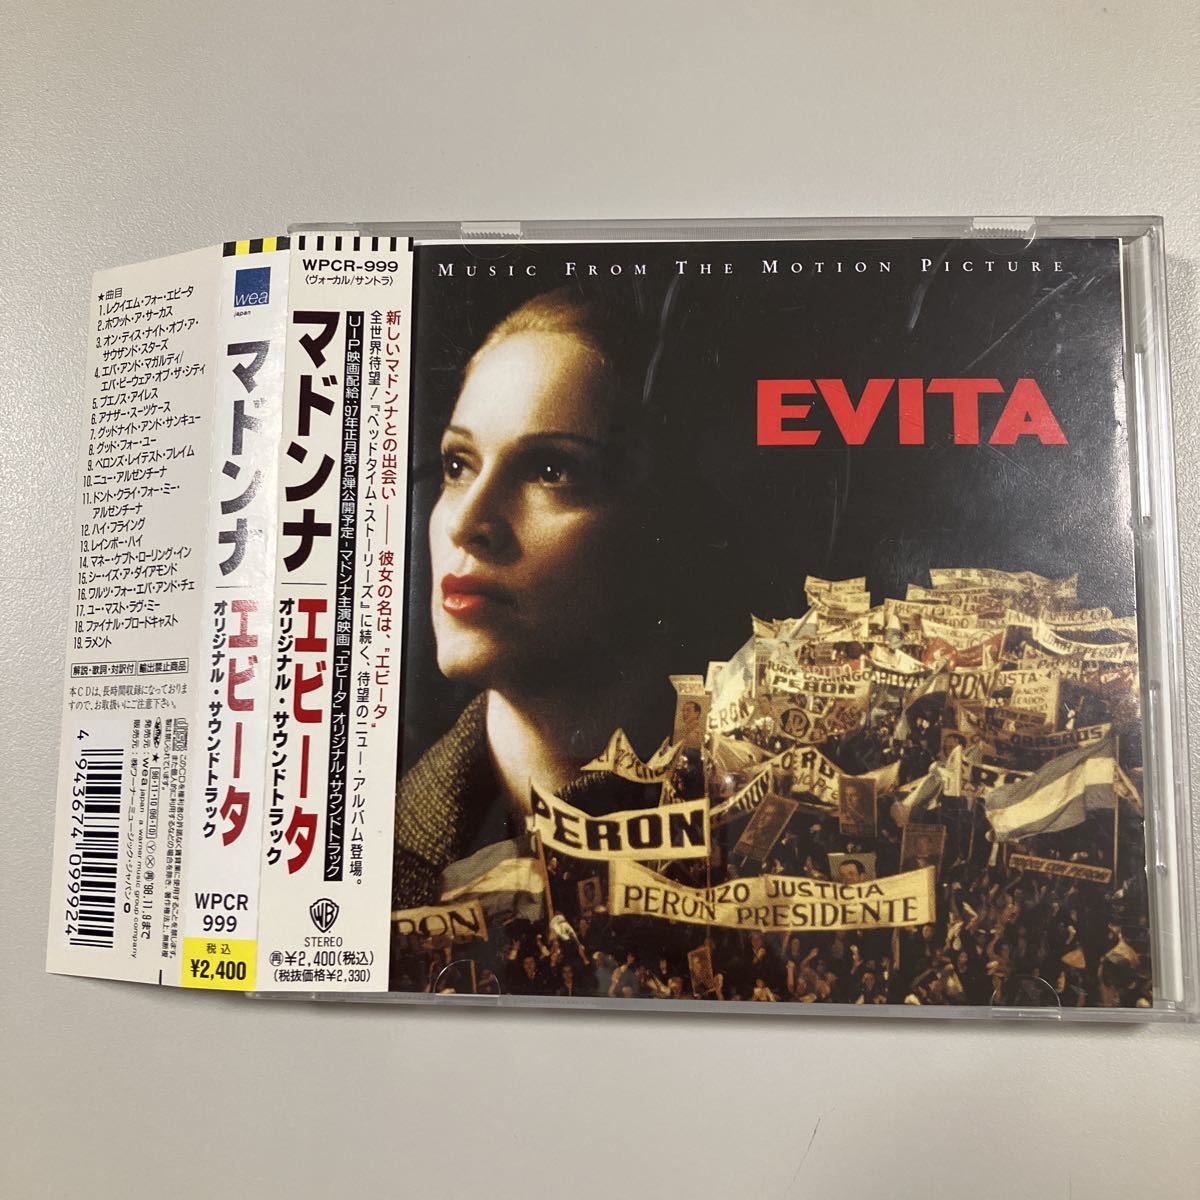 [ западная музыка 2] ценный .CD.! с поясом оби записано в Японии Madonna e Be ta оригинал саундтрек MADONNA EVITA